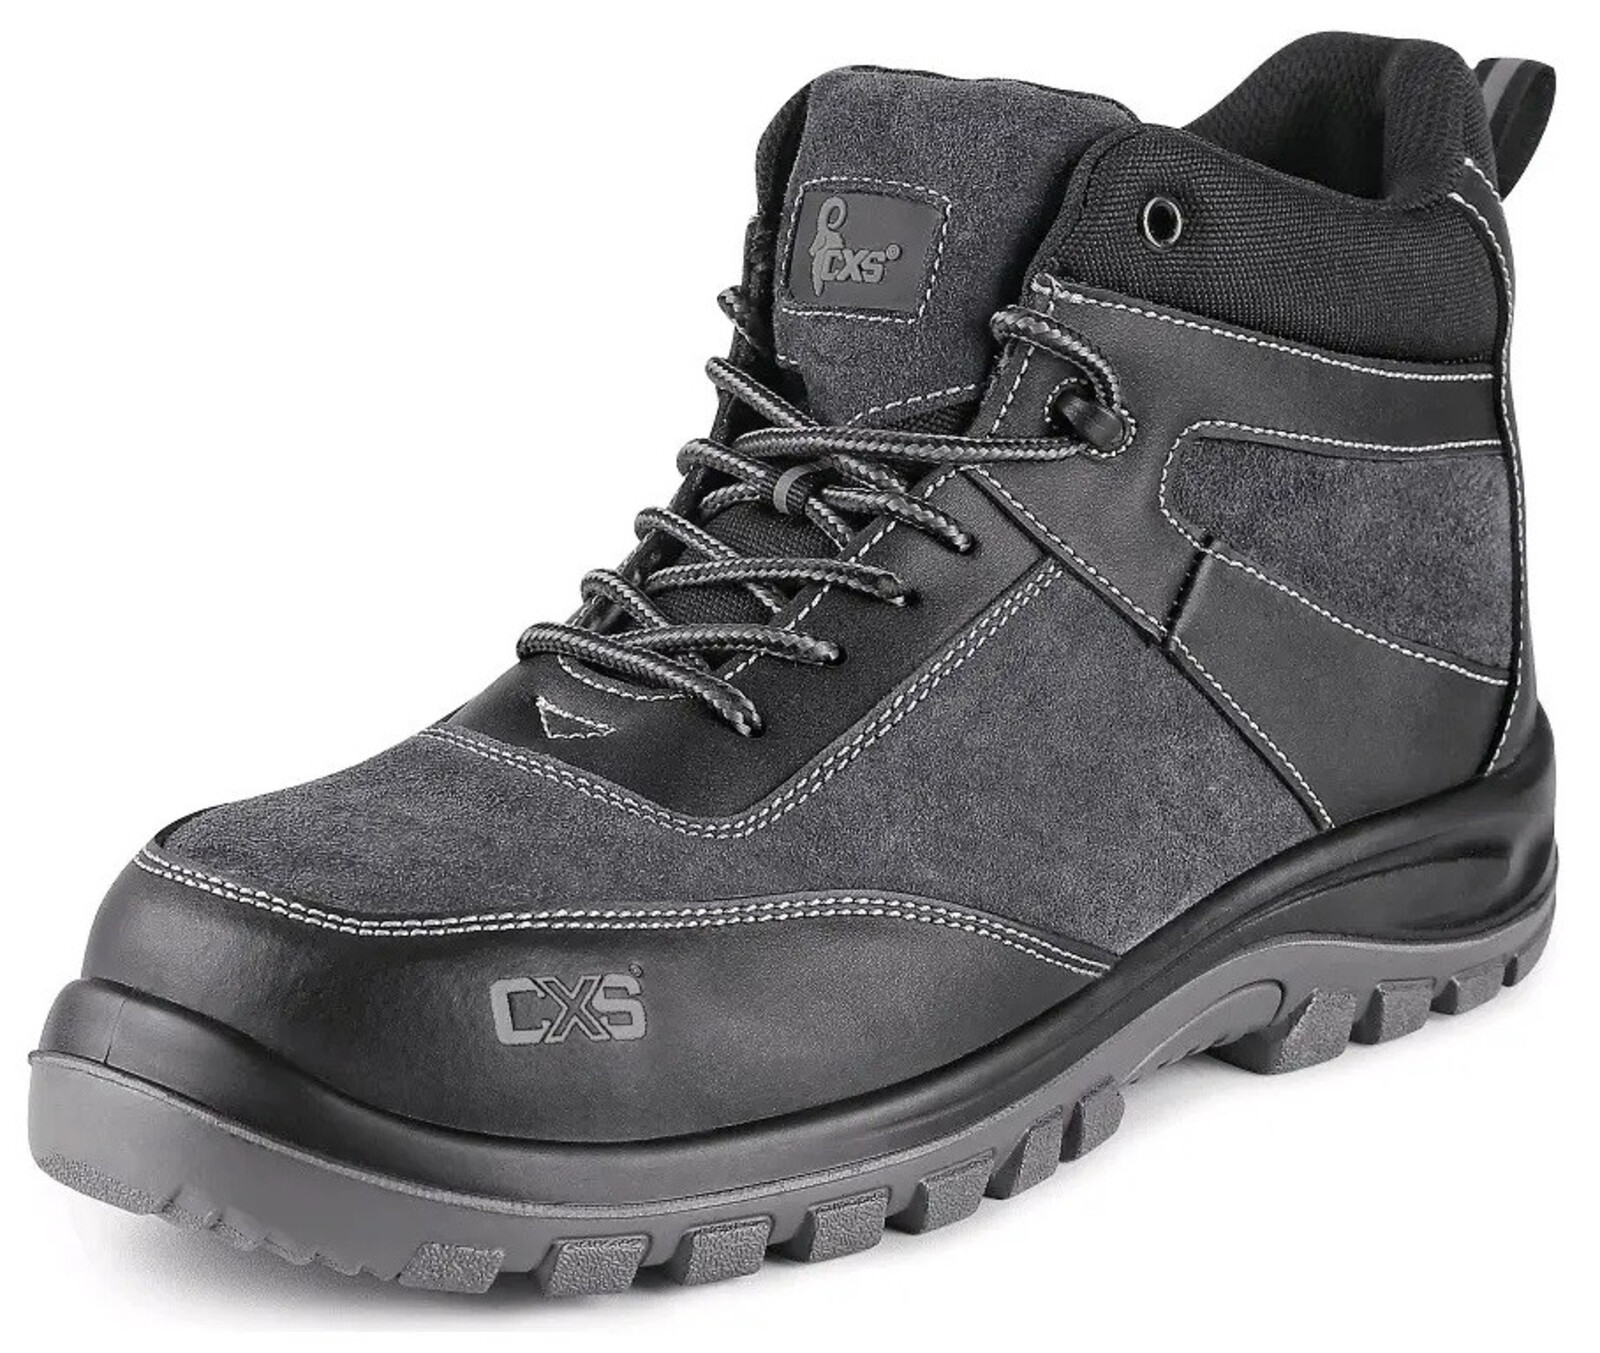 Bezpečnostná členková obuv CXS Profit Top S1P SRC - veľkosť: 47, farba: čierna/sivá